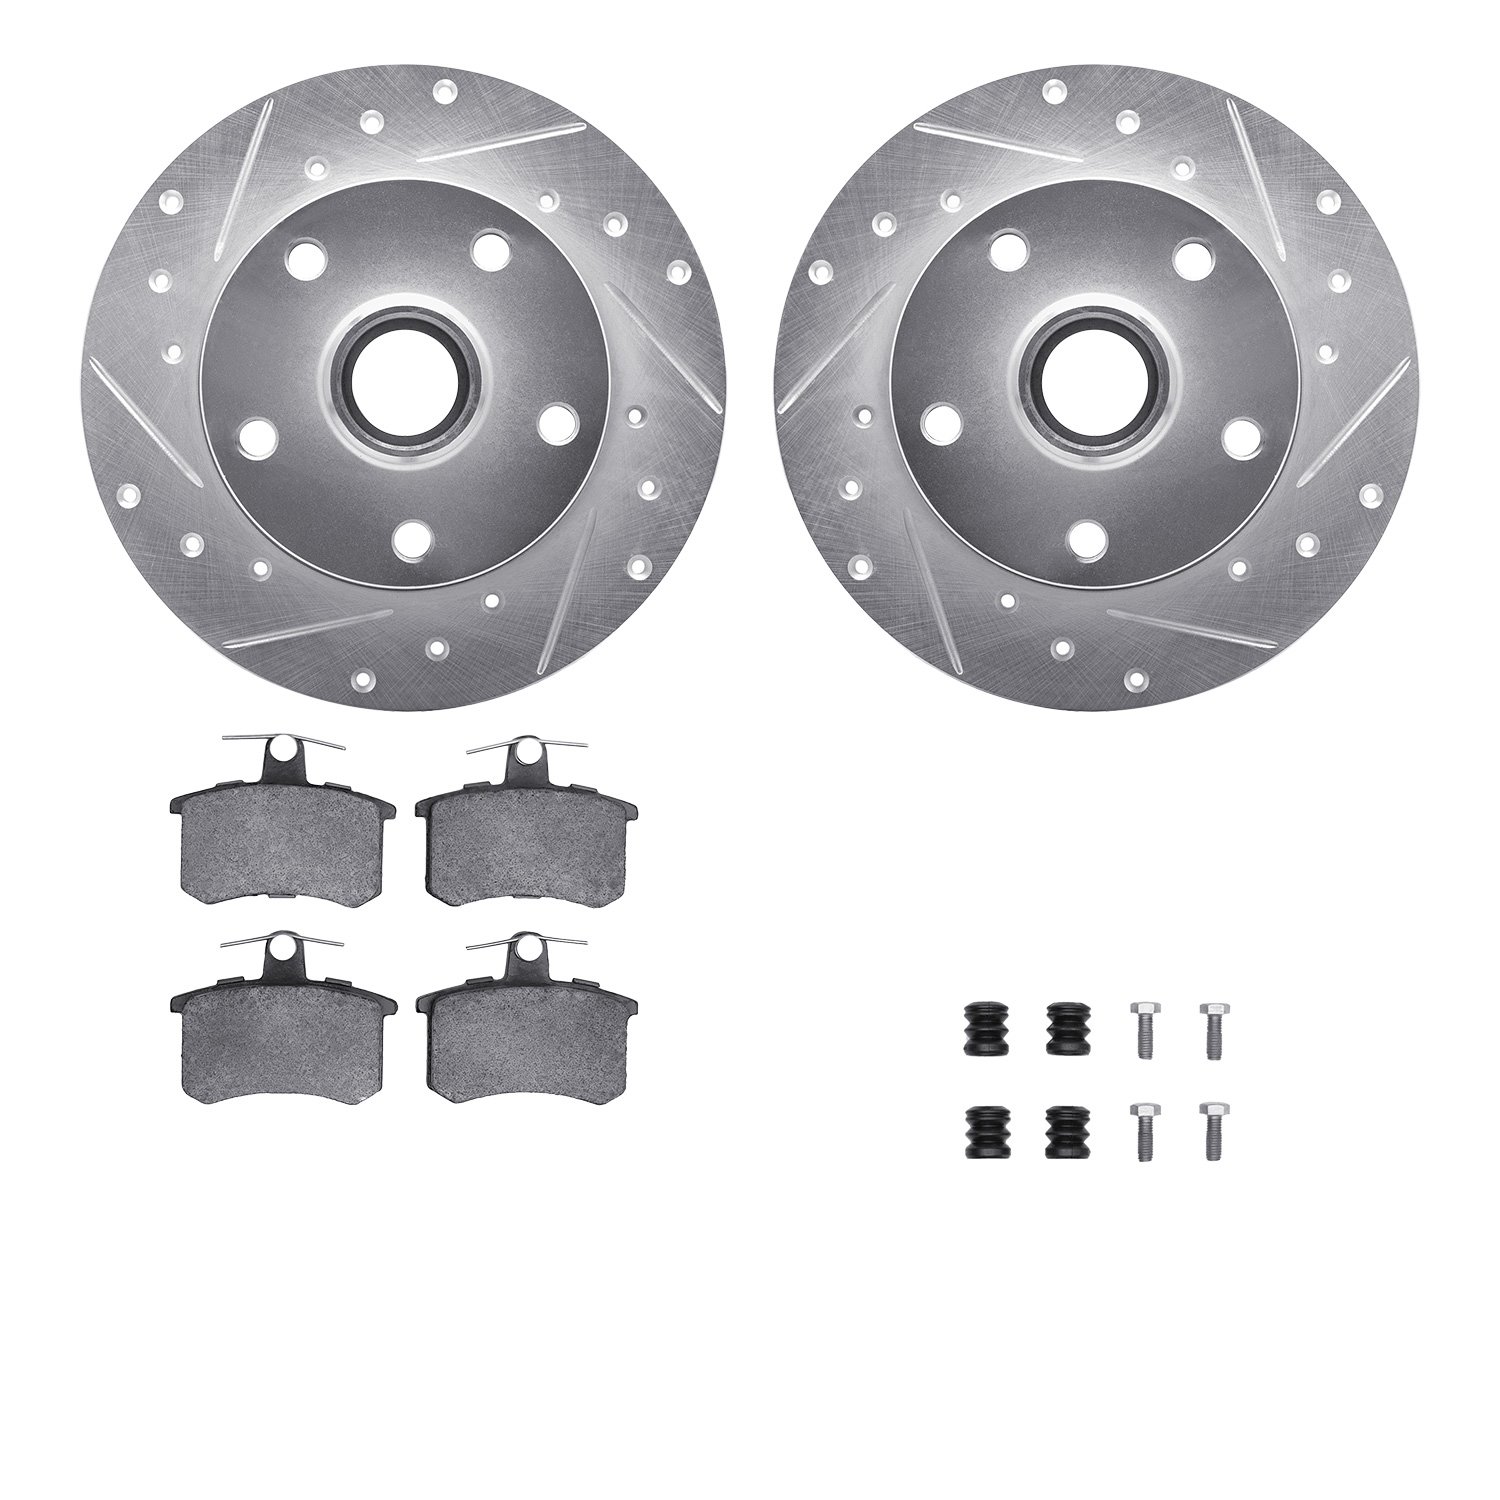 7612-73017 Drilled/Slotted Brake Rotors w/5000 Euro Ceramic Brake Pads Kit & Hardware [Silver], 1996-1997 Audi/Volkswagen, Posit